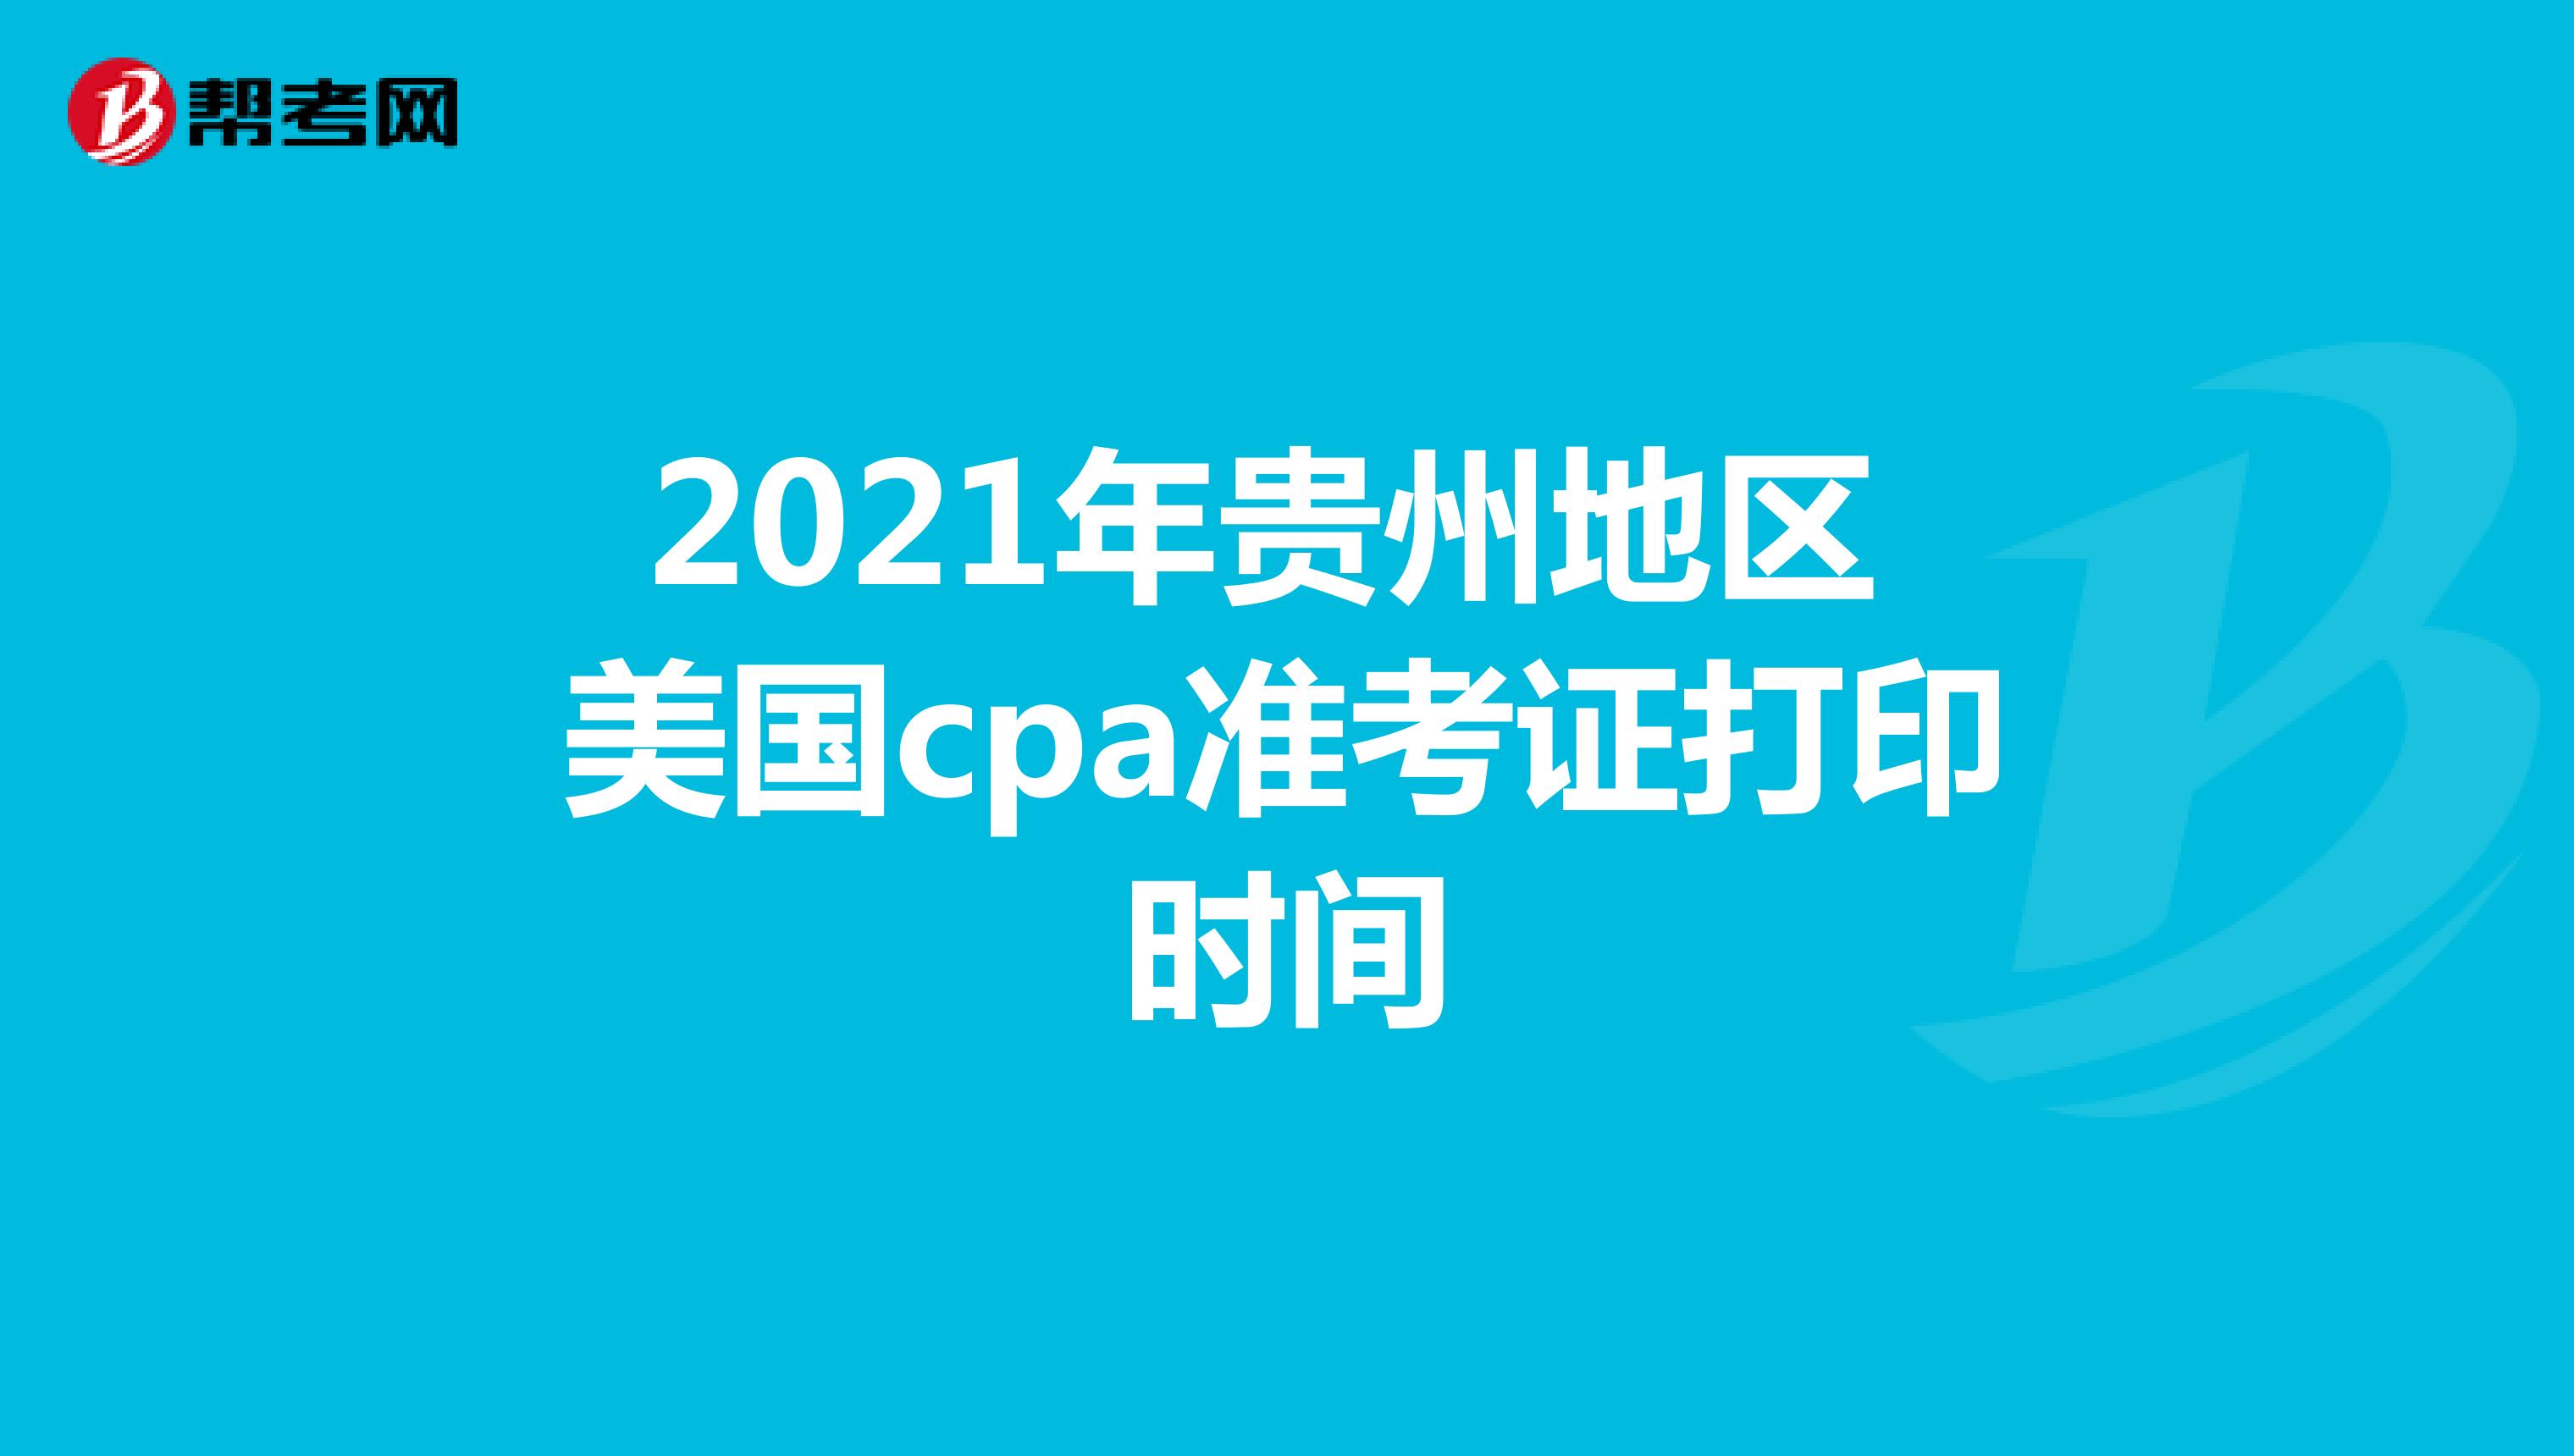 2021年贵州地区美国cpa准考证打印时间